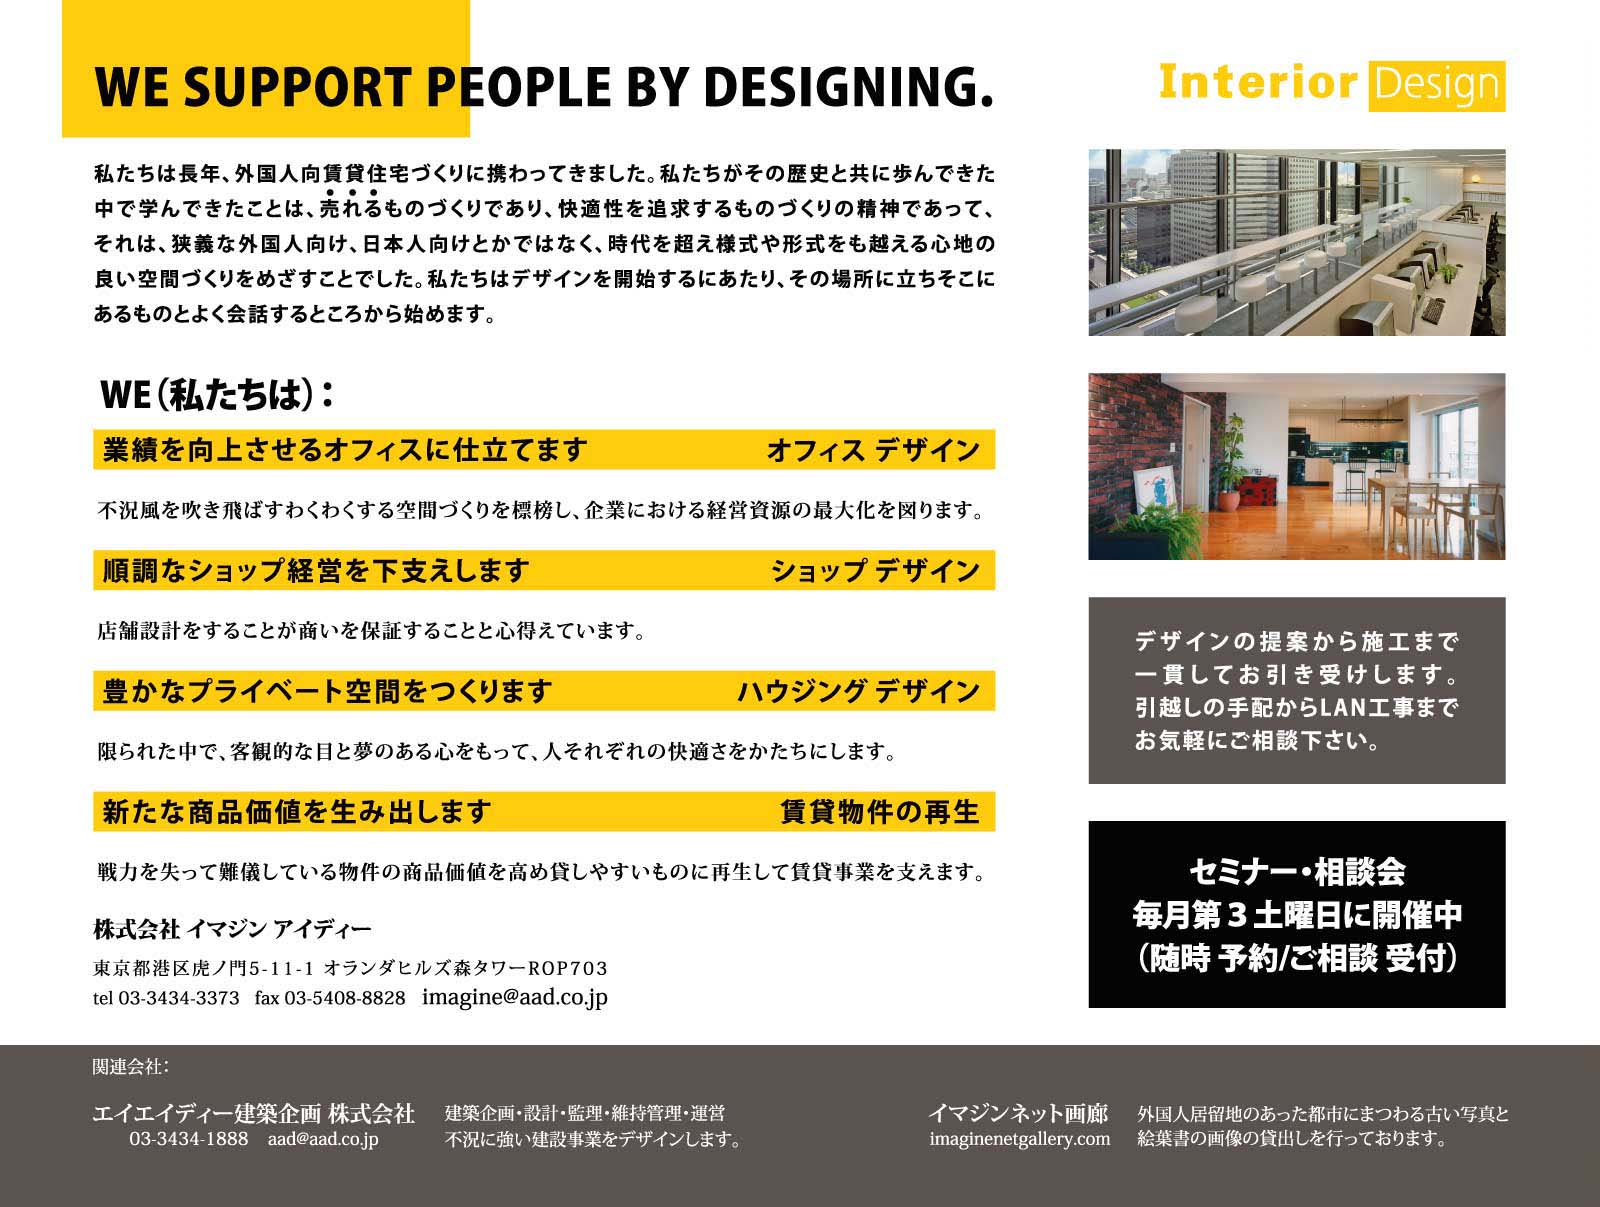 we support people by designing. | Interior Design | 私たちは長年、外国人向け賃貸住宅づくりに携わってきました。私たちがその歴史と共に歩んできた中で学んできたことは、売れるものづくりであり、快適性を追求するものづくりの精神であって、それは、狭義な外国人向け、日本人向けとかではなく、時代を超え様式や形式をも越える心地の良い空間づくりをめざすことでした。私たちはデザインを開始するにあたり、その場所に立ちそこにあるものとよく会話するところから始めます。